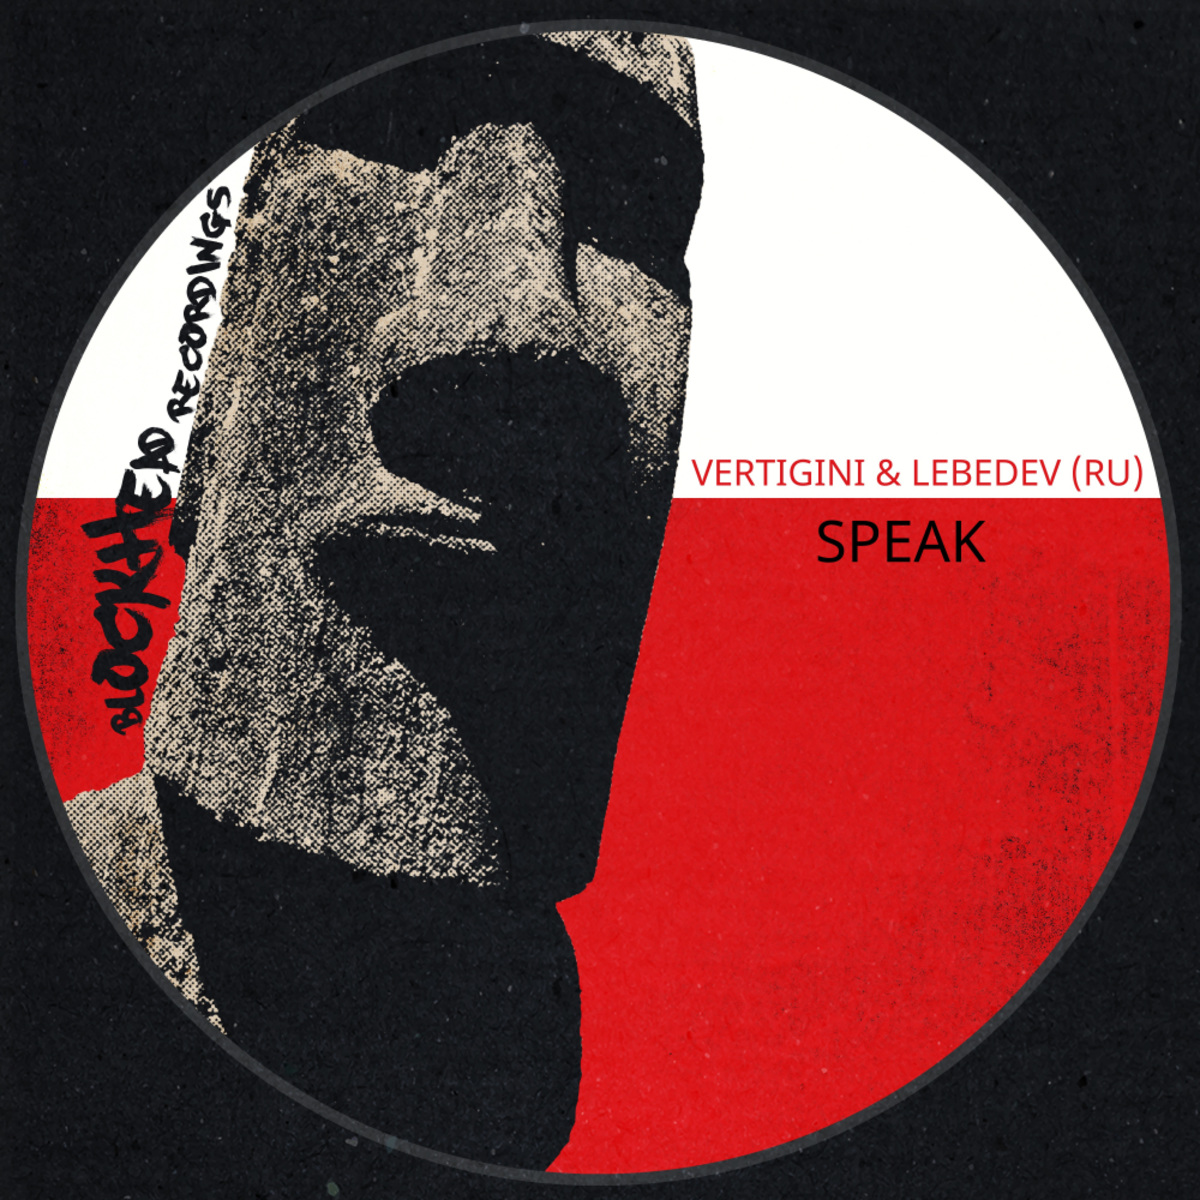 Vertigini & Lebedev (RU) - Speak / Blockhead Recordings